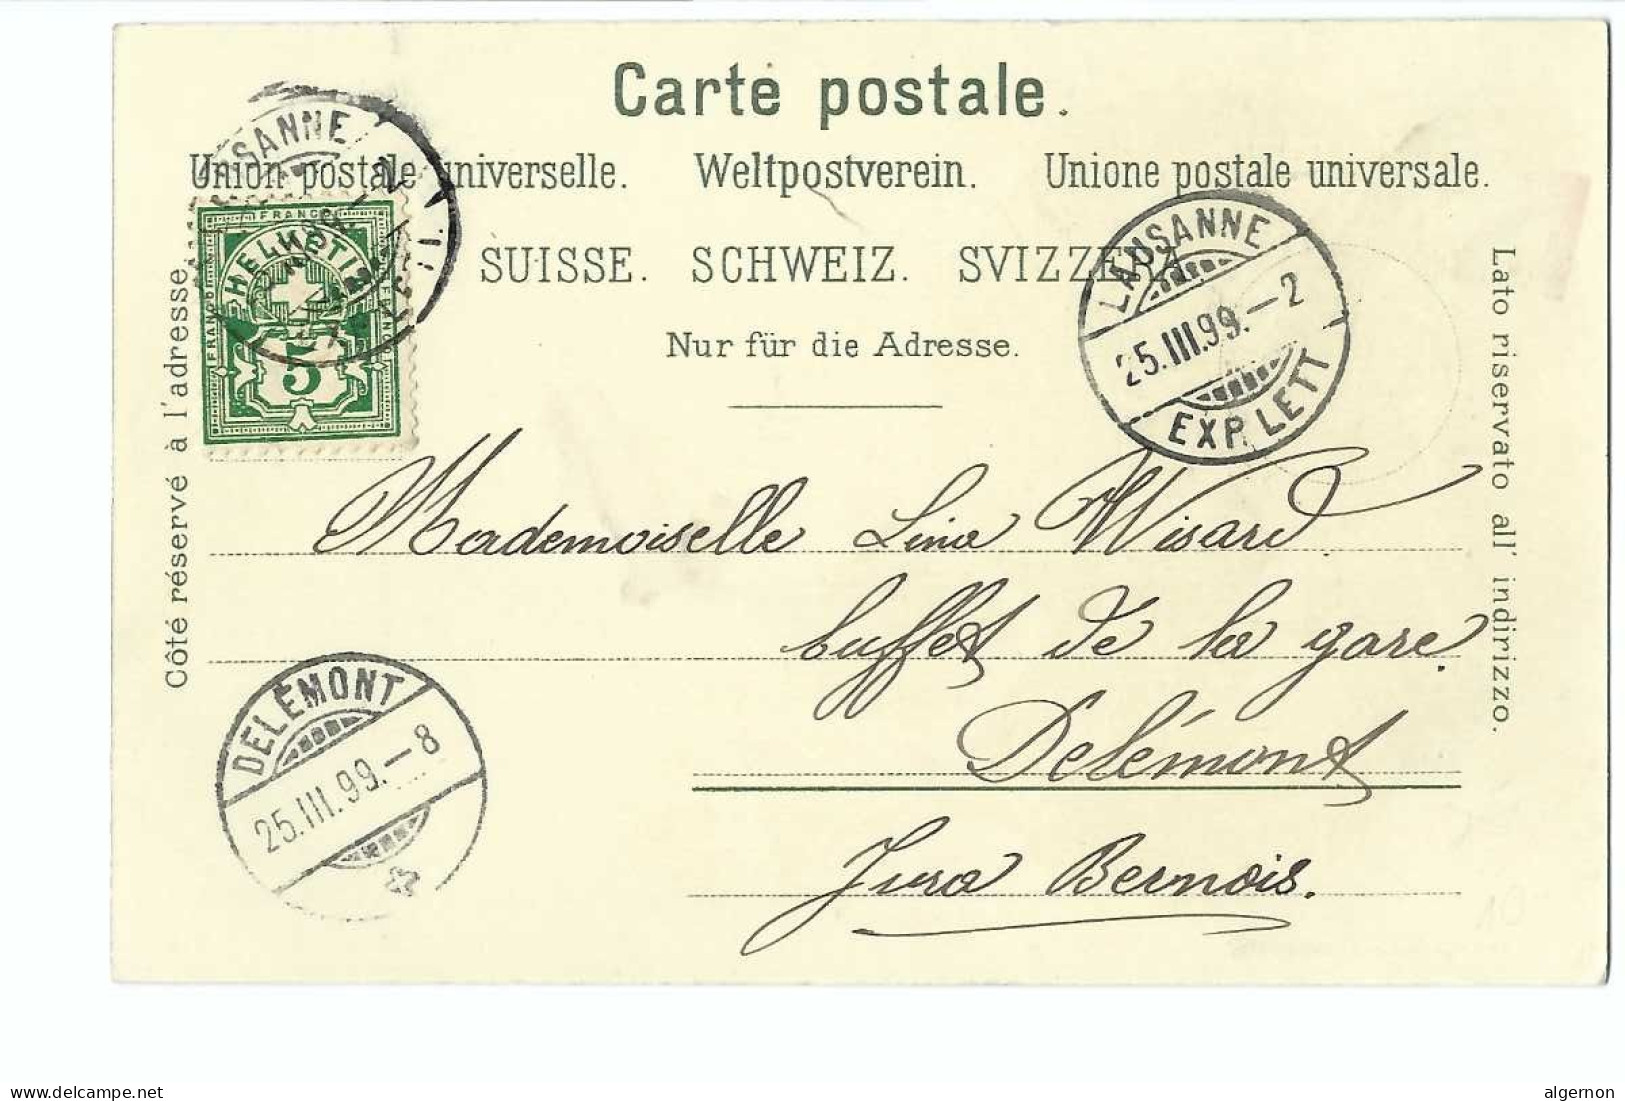 32567 -  Souvenir Du Lac Léman Château De CHILLON  Circulée 1899 Litho - Montreux